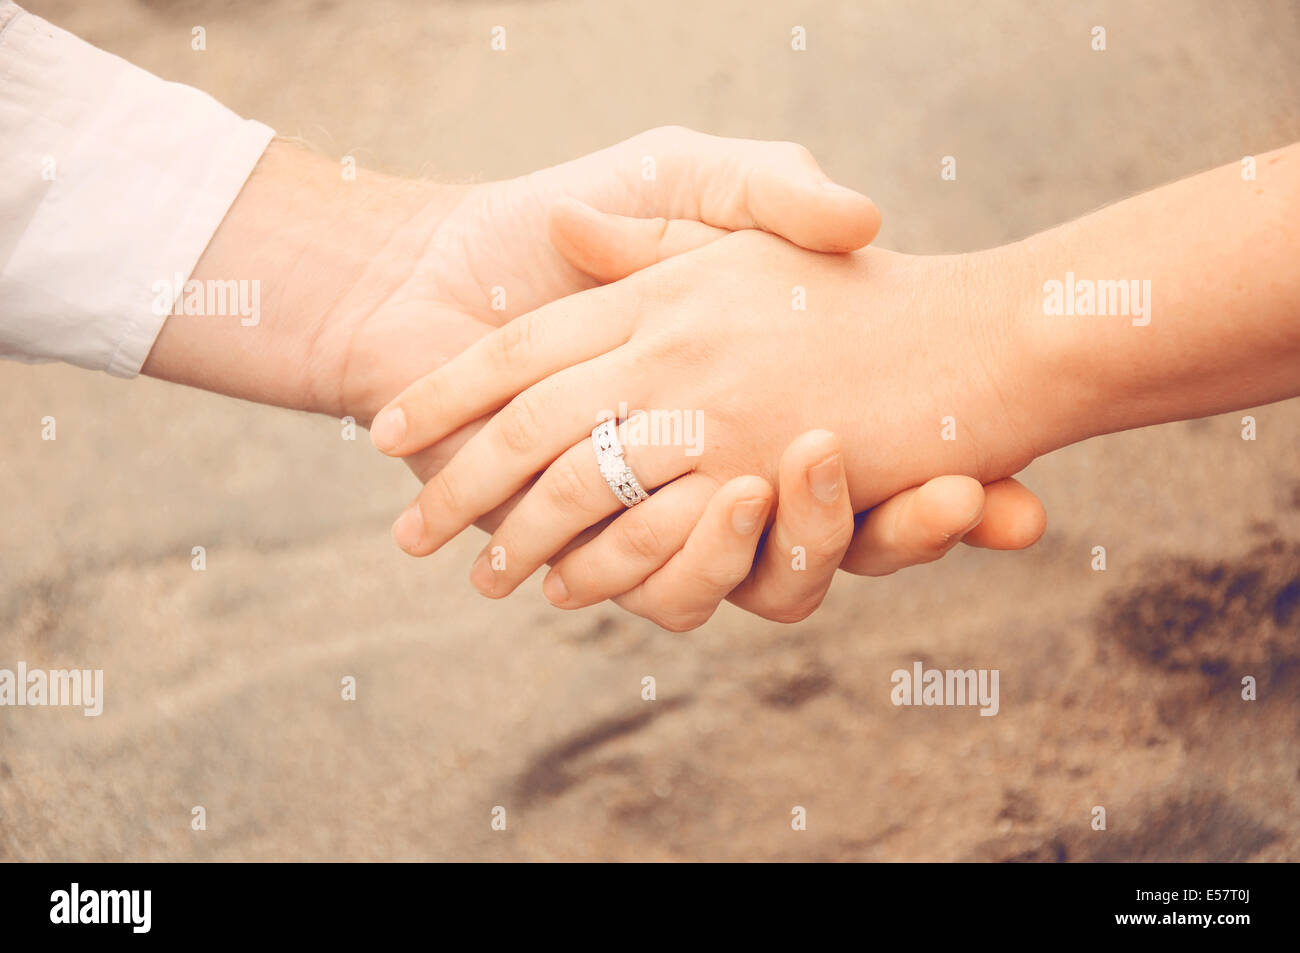 Halten die Hände am Strand, ein neu Brautpaar zeigt ihren Verlobungsring Stockfoto